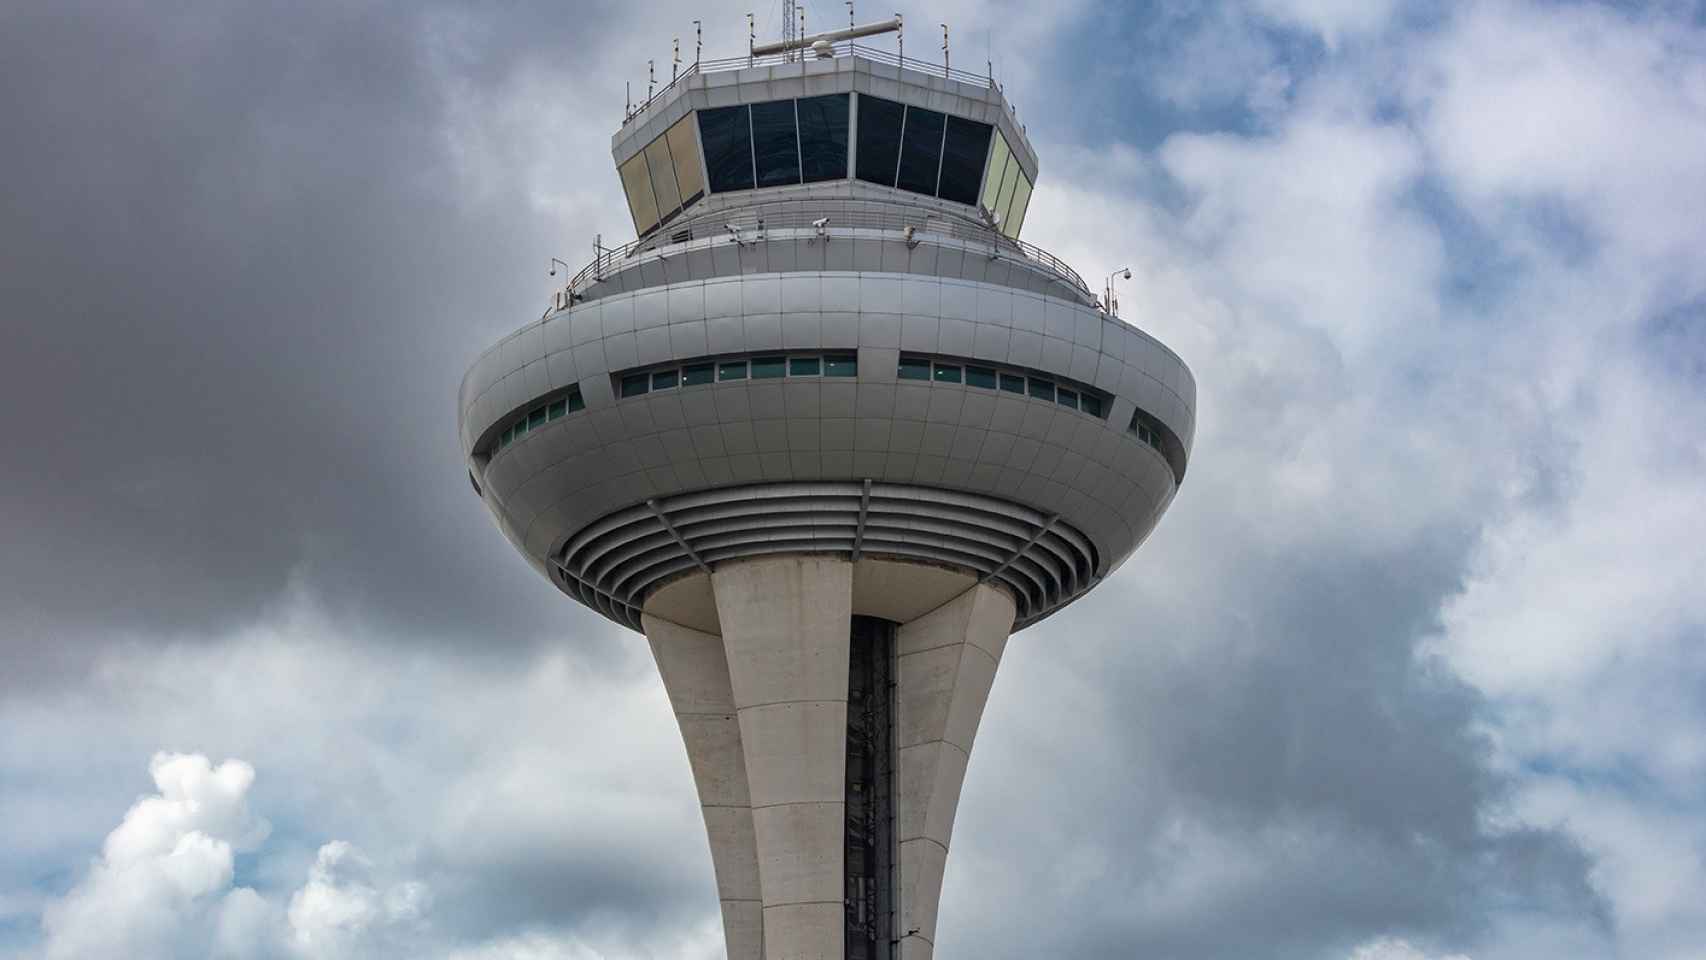 Torre de control del aeropuerto Adolfo Suárez-Madrid Barajas.